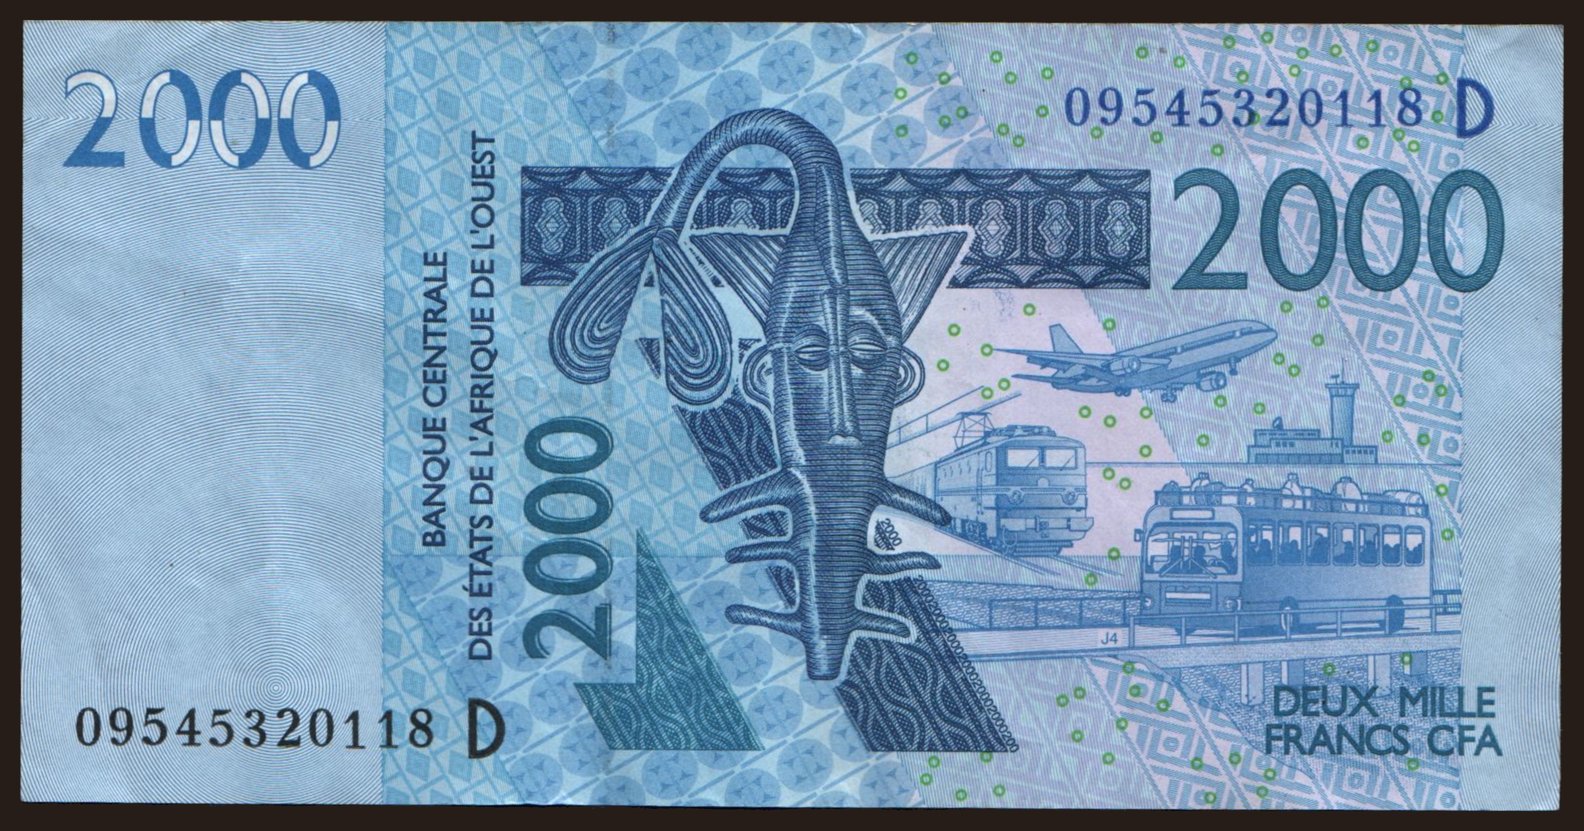 Mali, 2000 francs, 2003